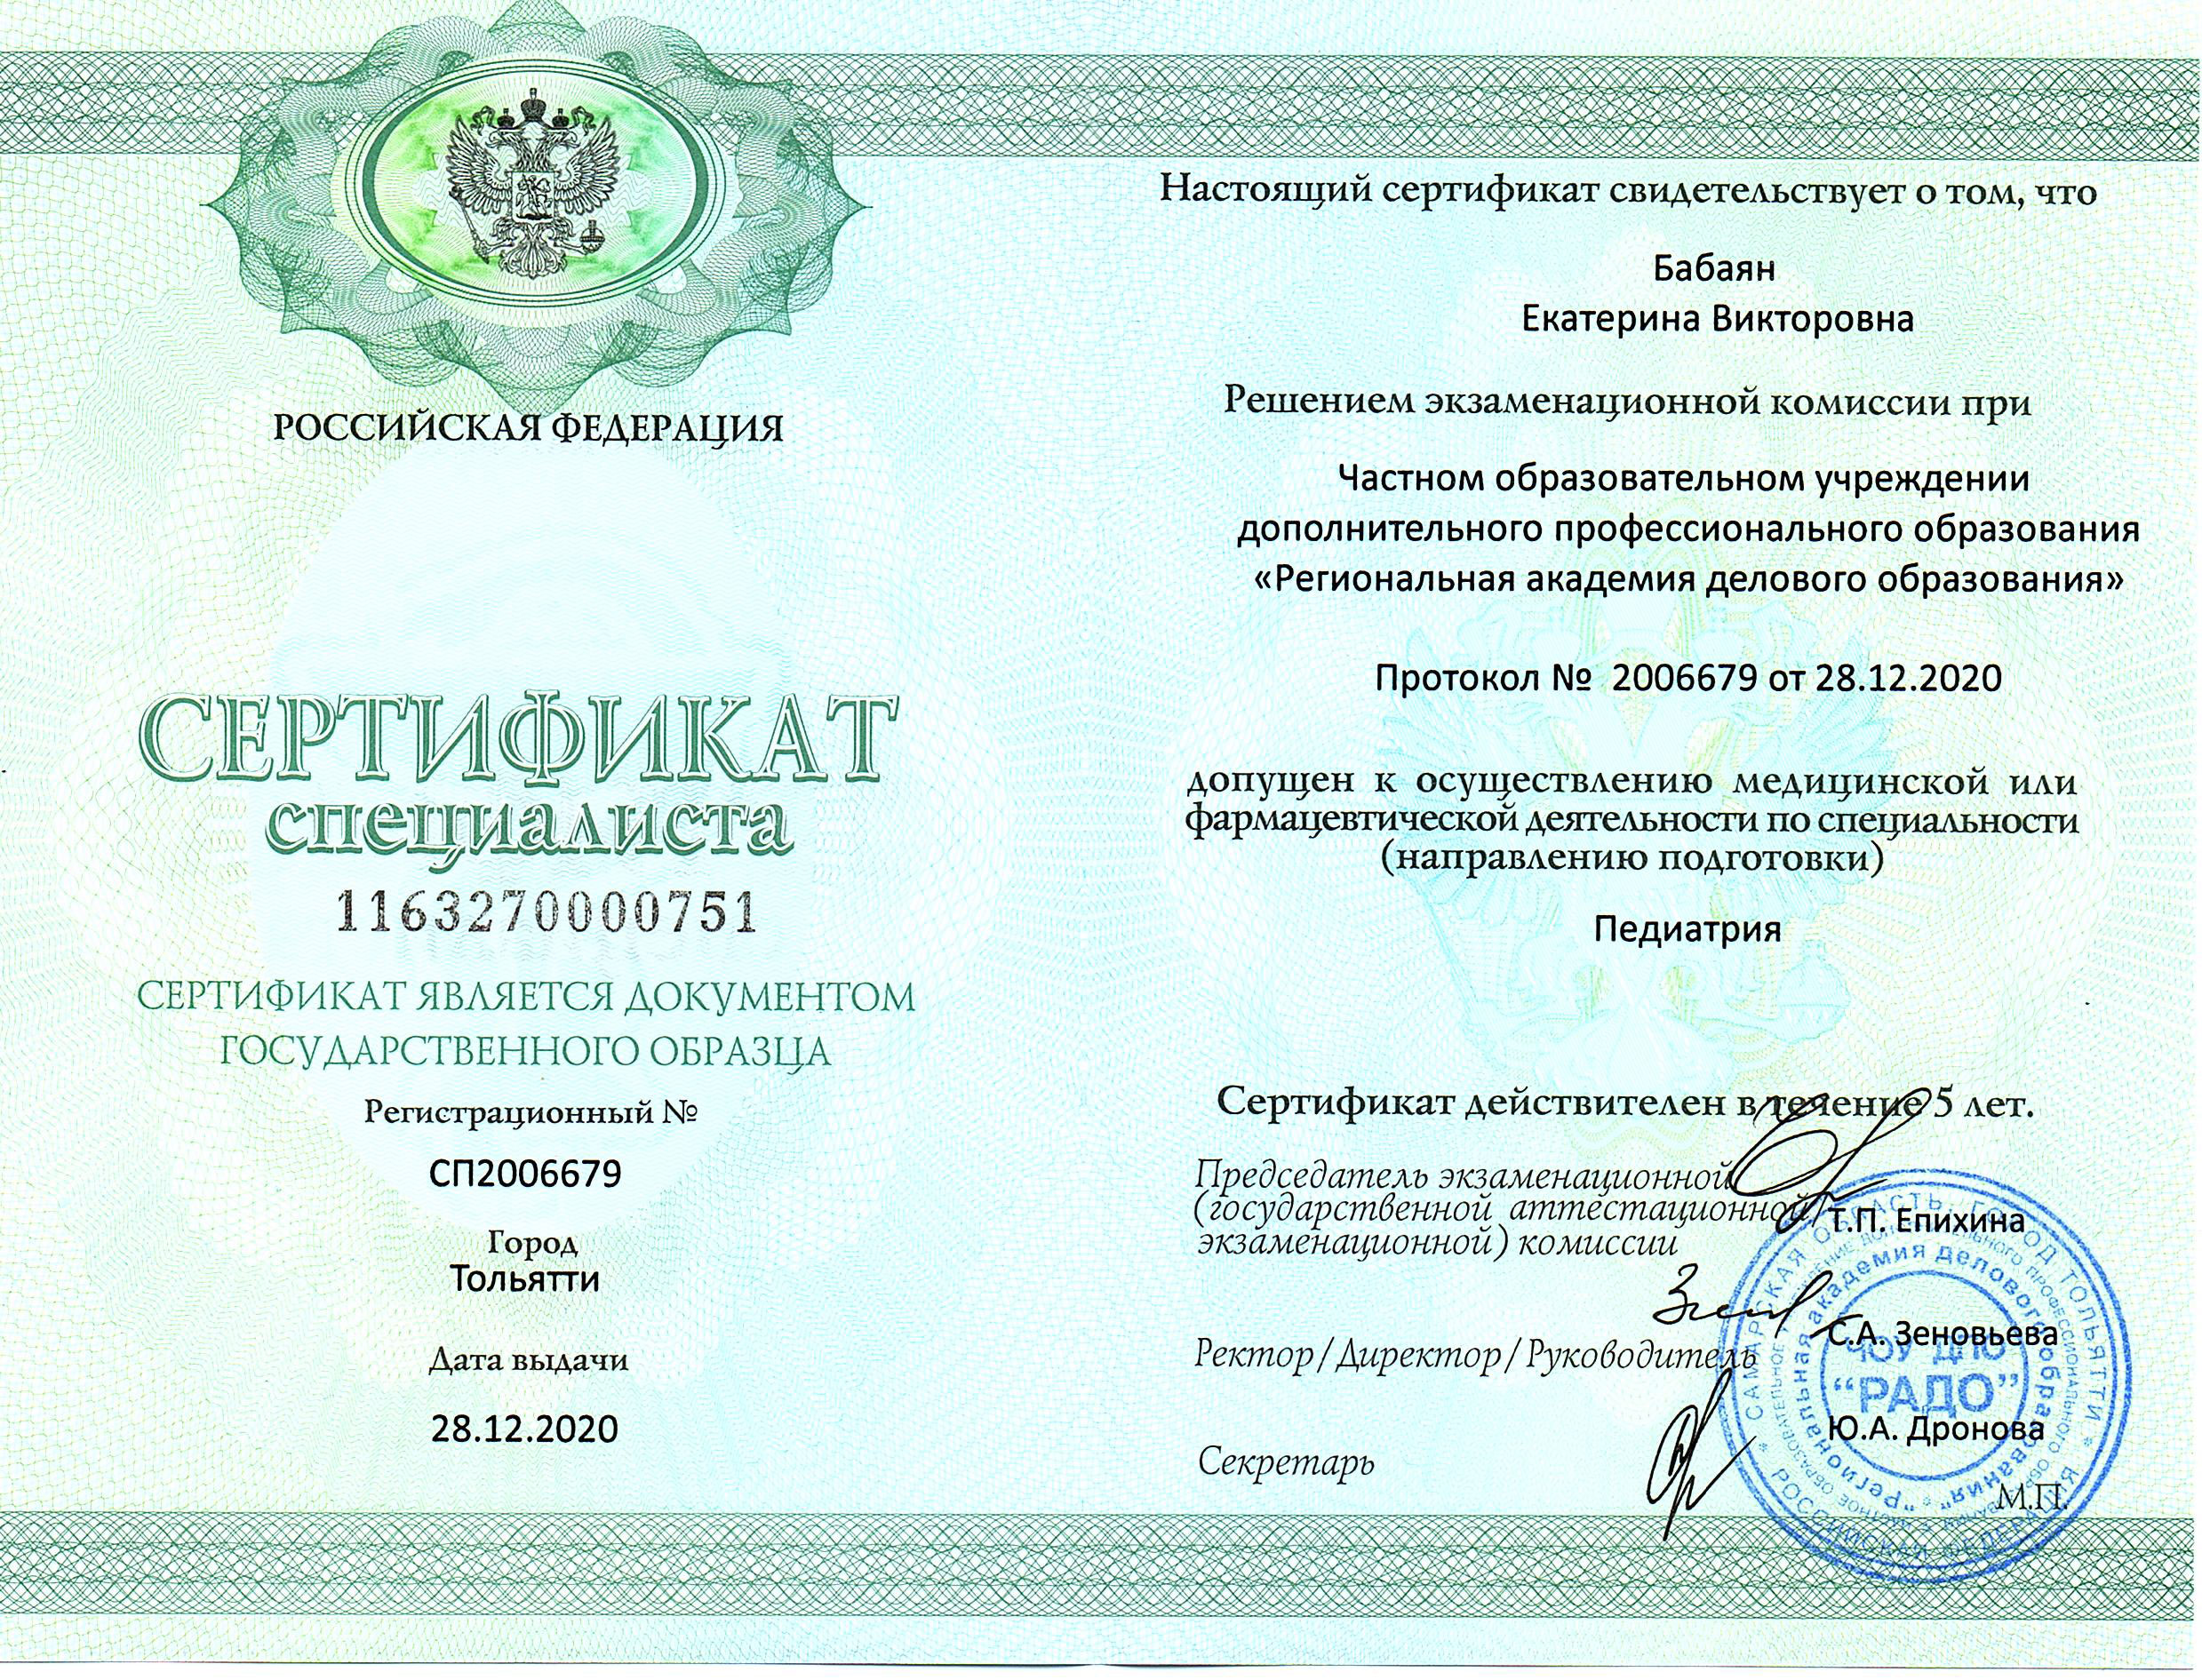 бабаян сертификат педиатра